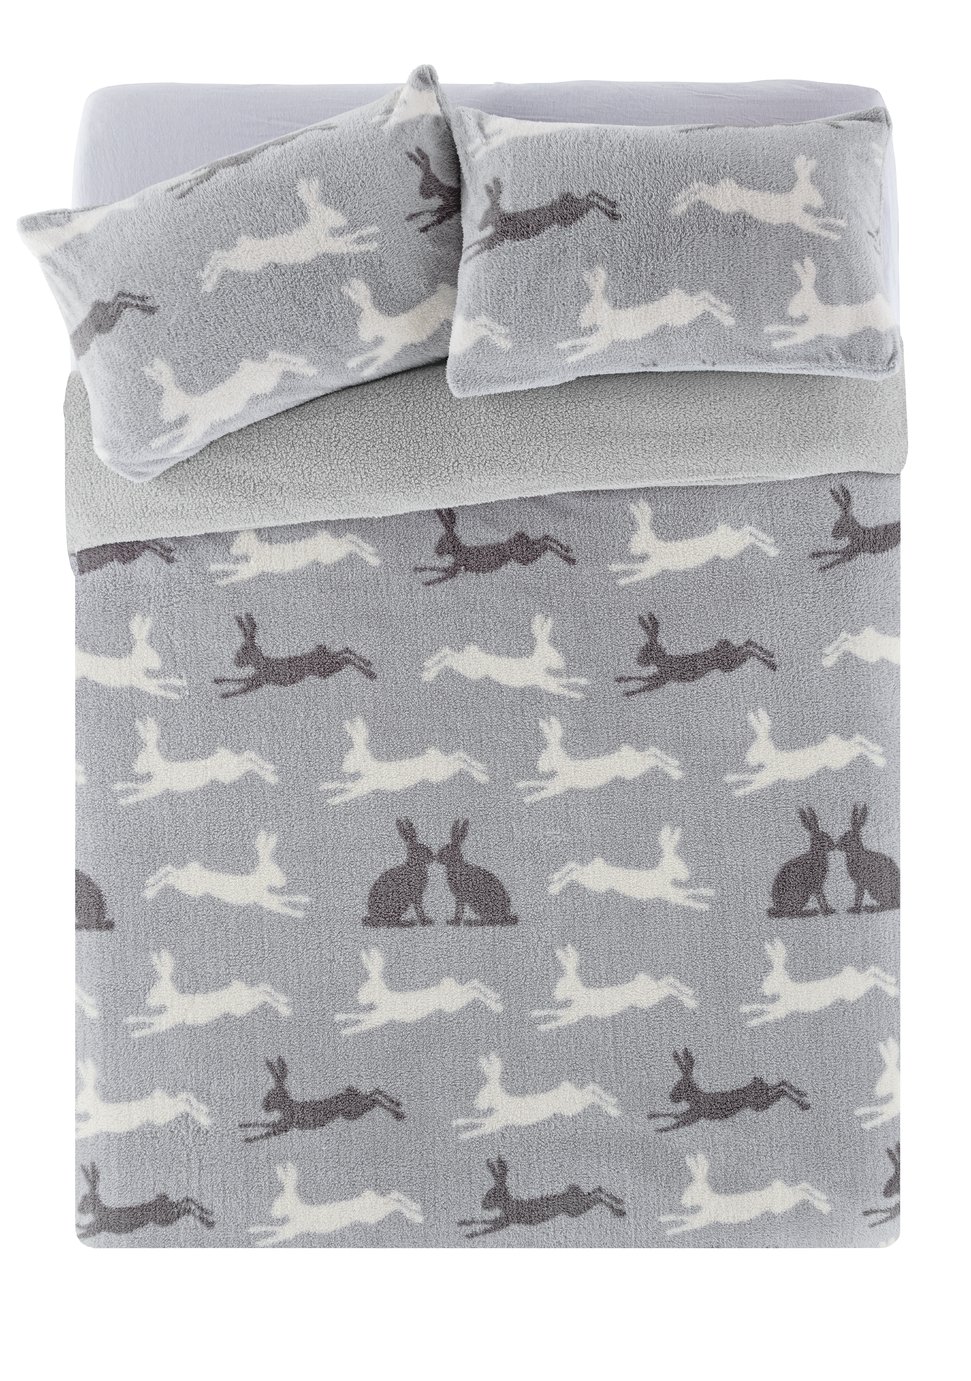 Argos Home Fleece Hare Bedding Set - Double